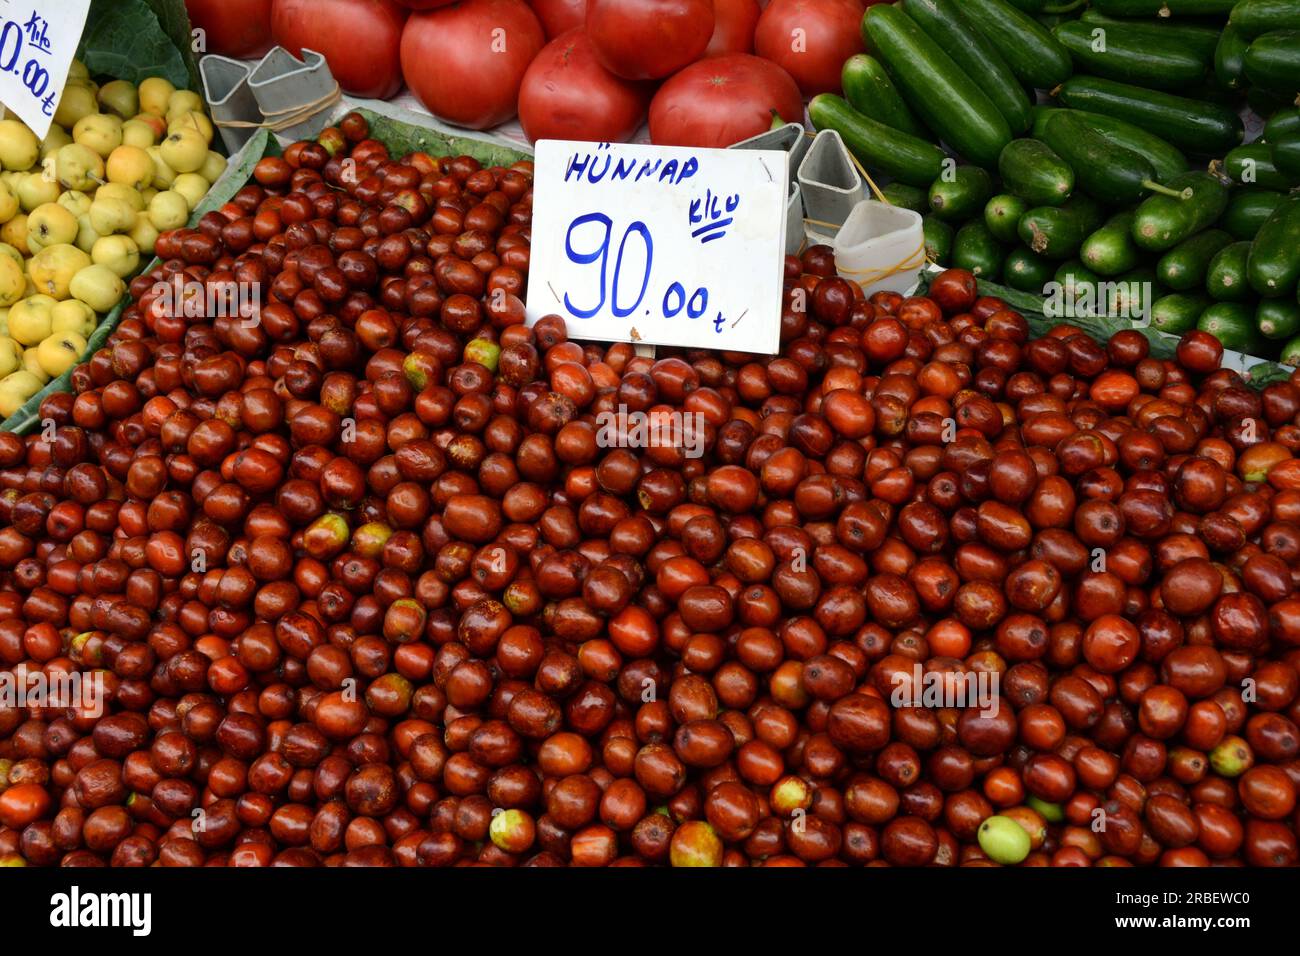 Une exposition de fruits jujube, également connue sous le nom de date rouge ou date chinoise, sur un marché turc de fruits et légumes en plein air à Istanbul, Turquie / Turkiye. Banque D'Images